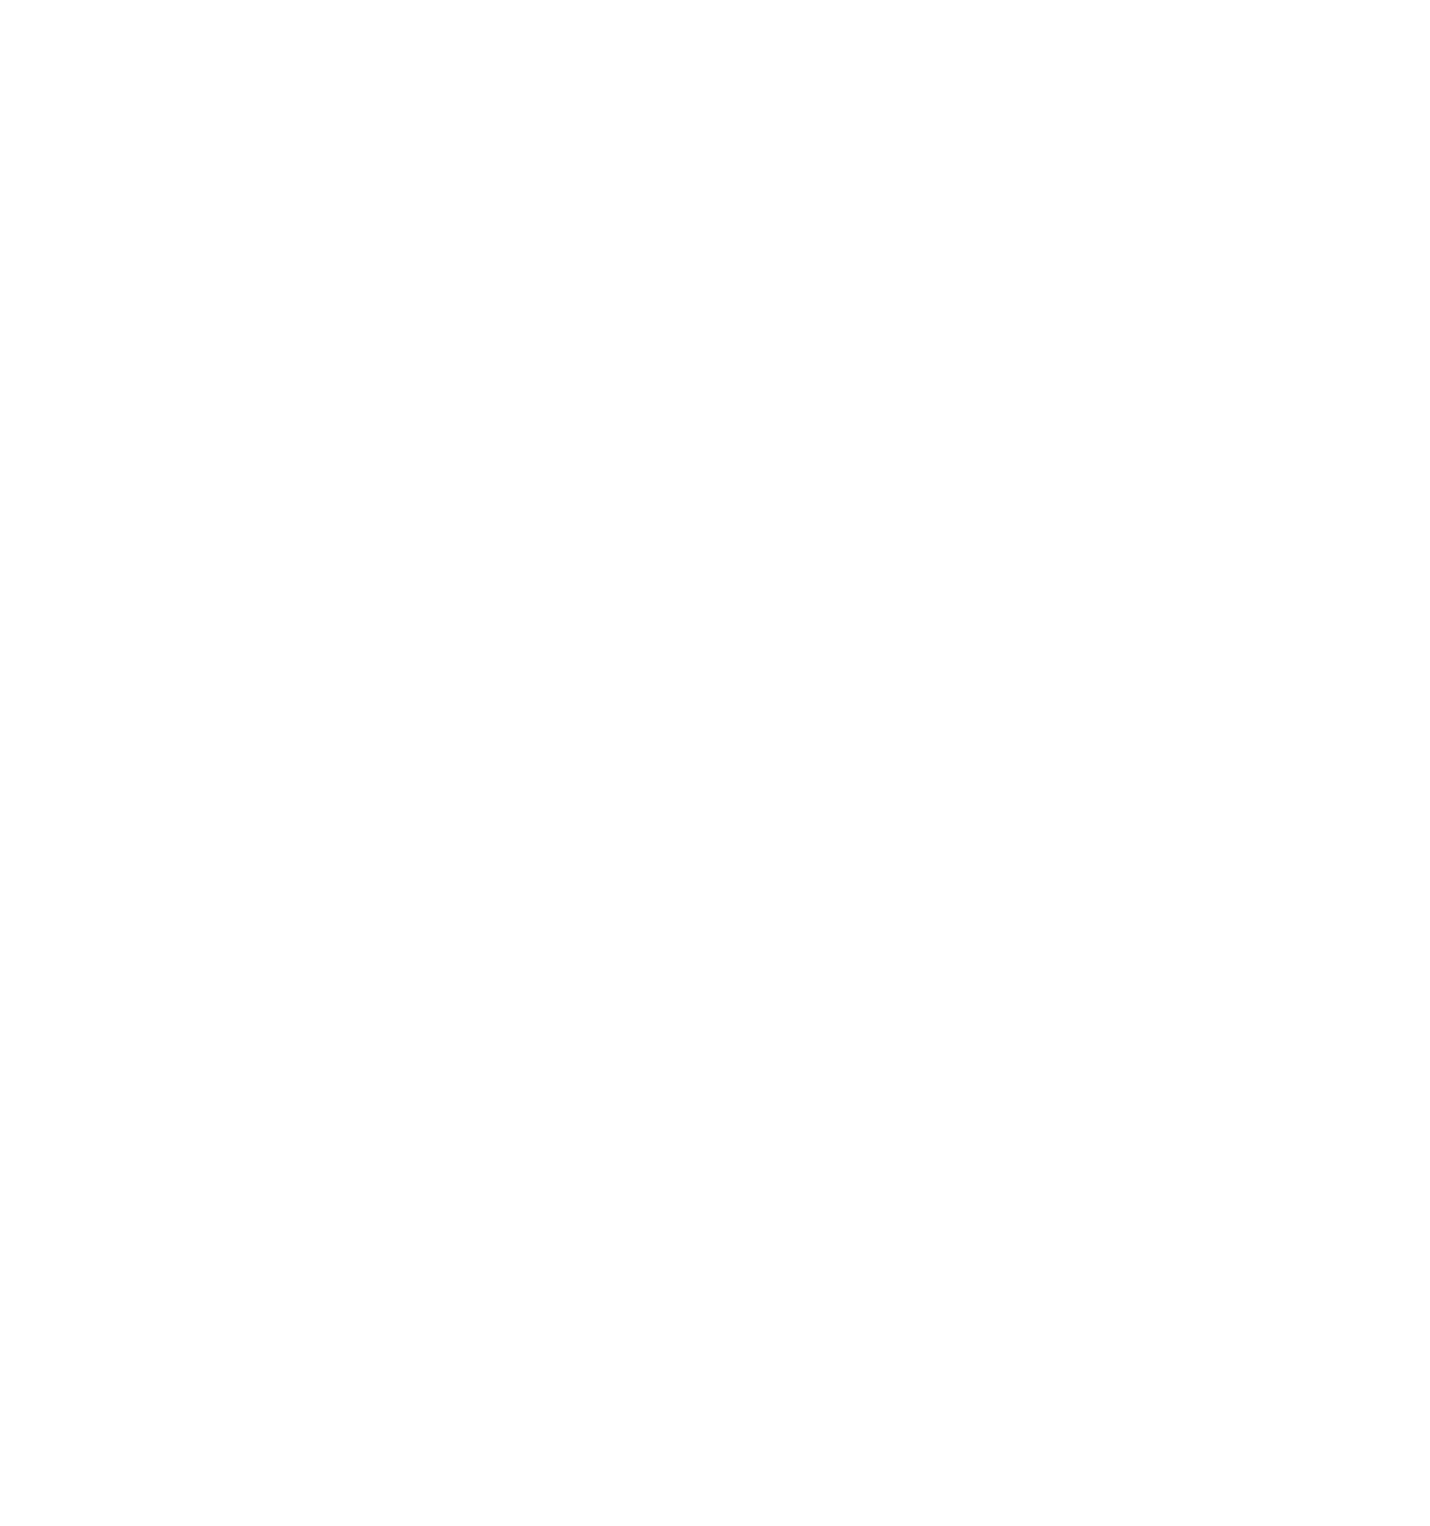 Gimv NV logo for dark backgrounds (transparent PNG)